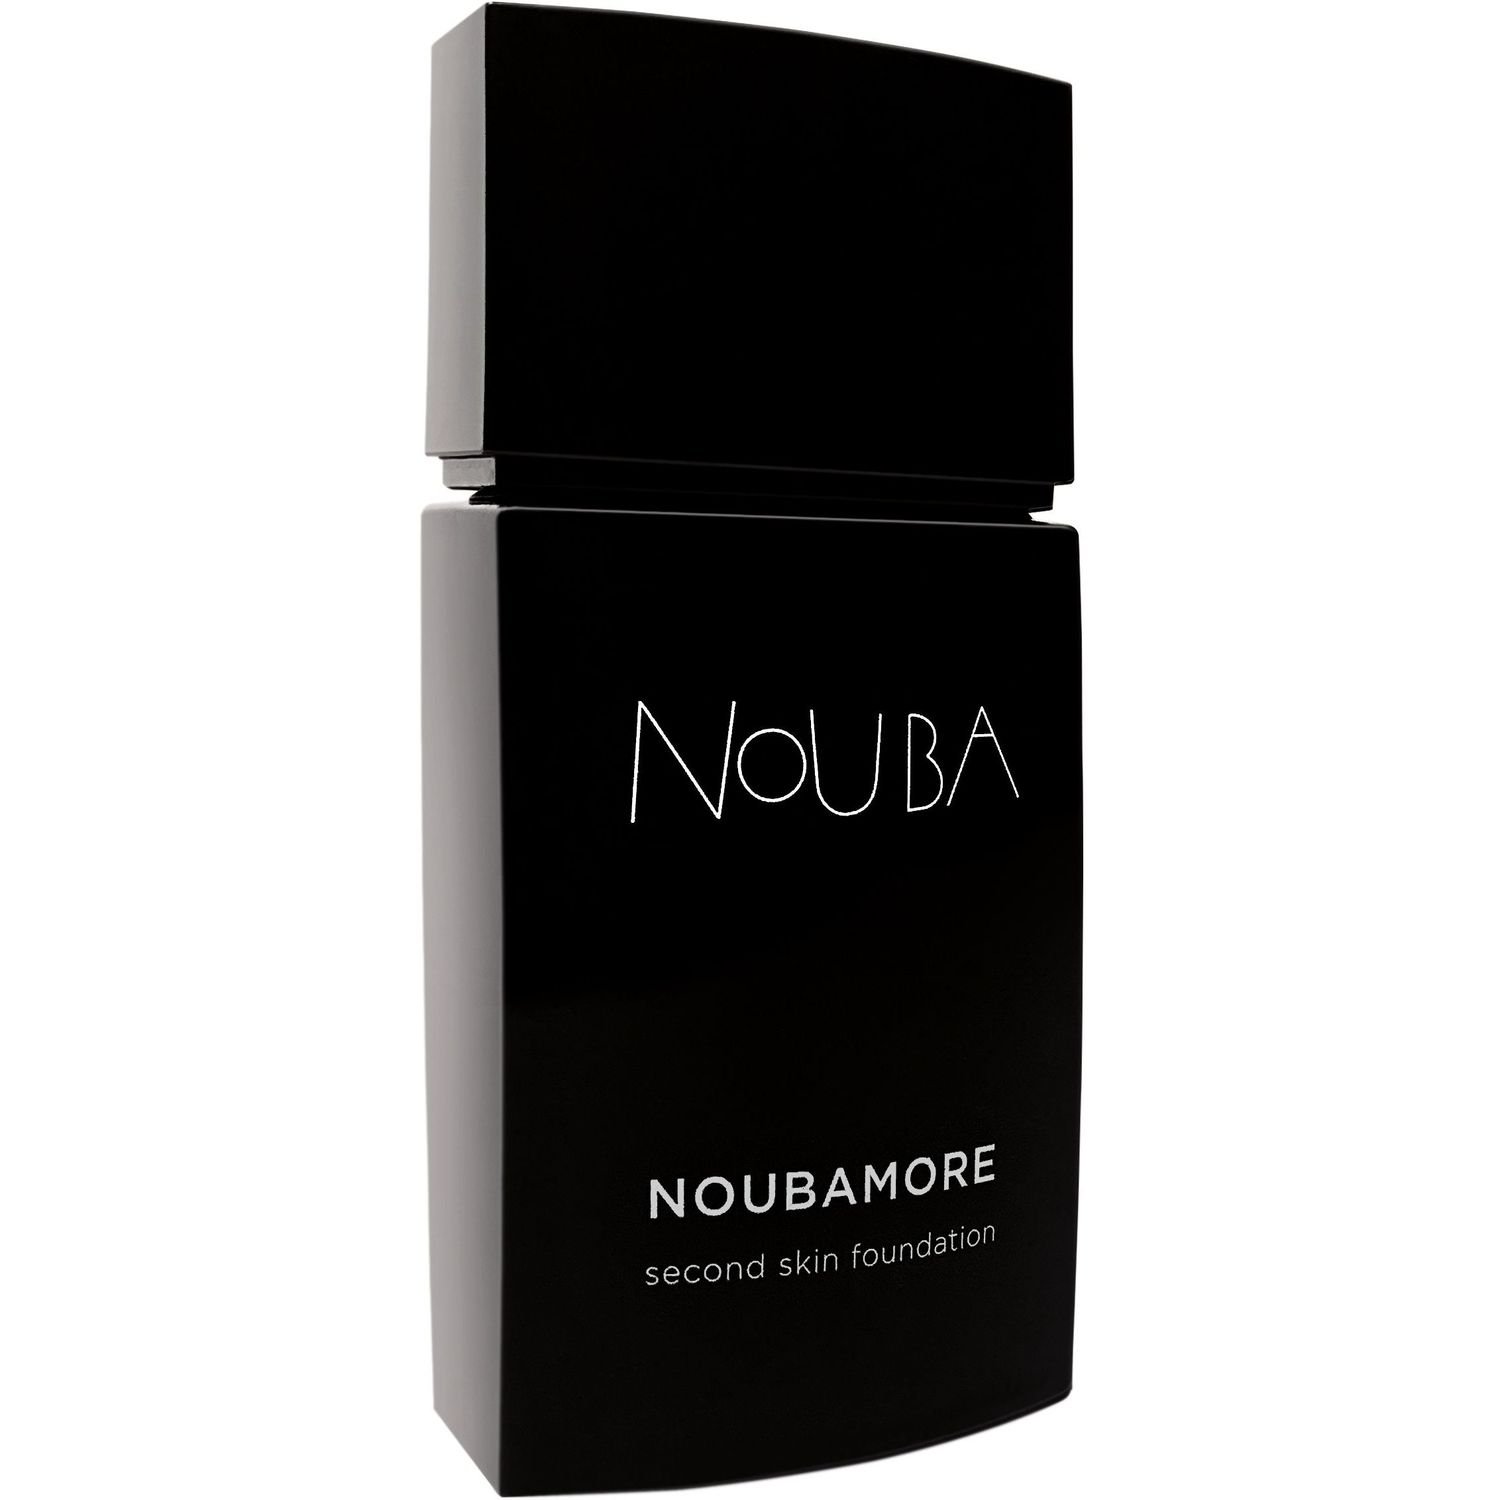 Тональная основа Nouba Noubamore Second Skin тон 85, 30 мл - фото 1